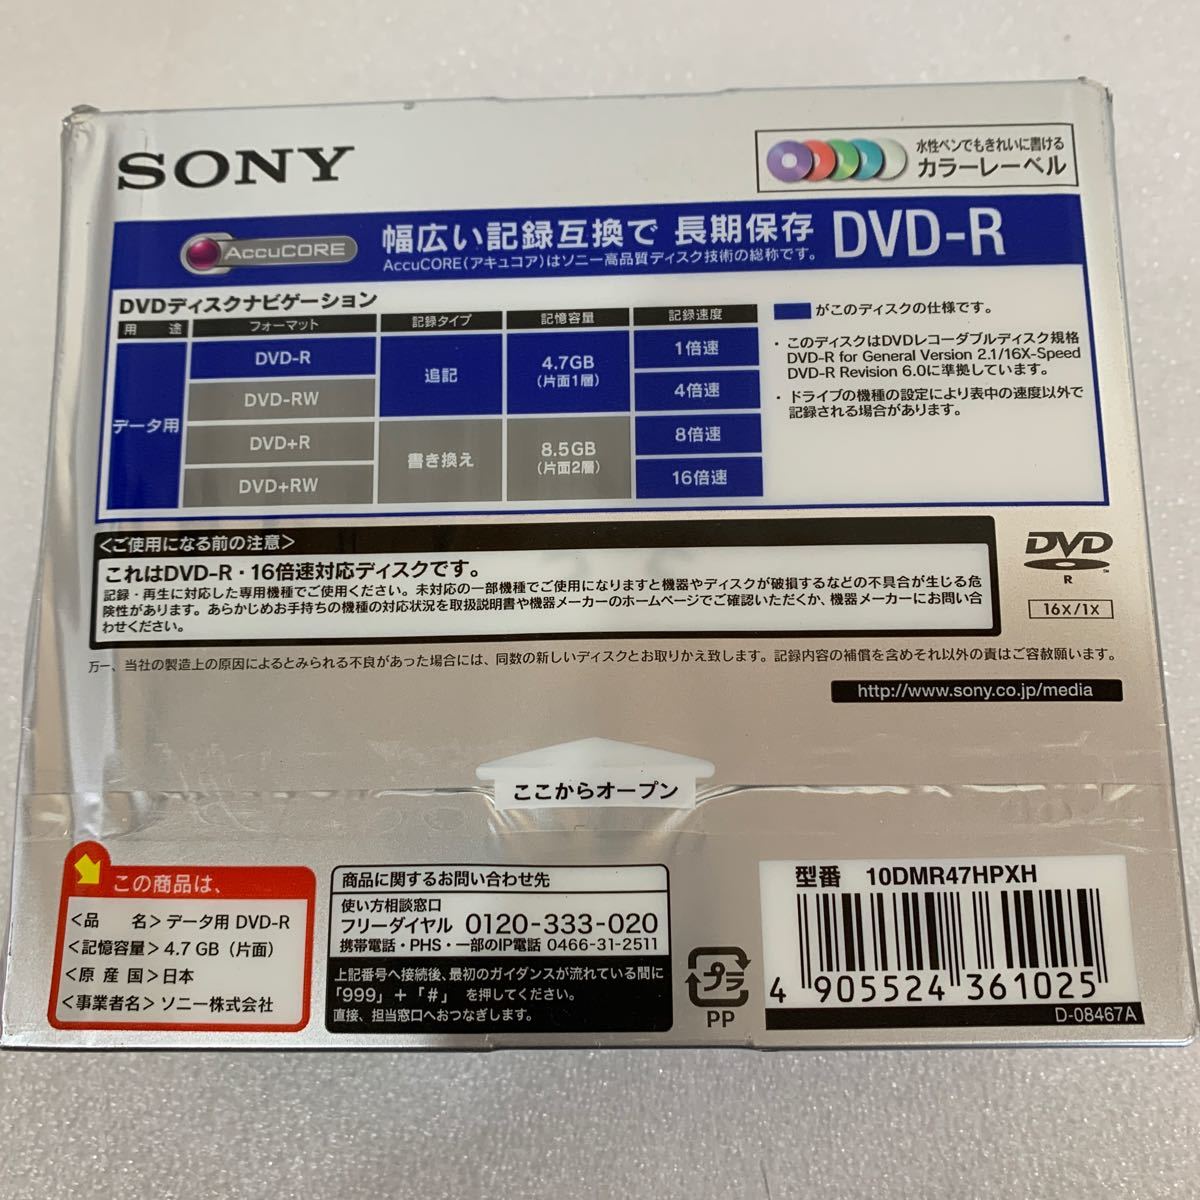 QW3376 нераспечатанный SONY/ Sony данные для DVD-R 1DMR47HPXH 10 листов входит 0126